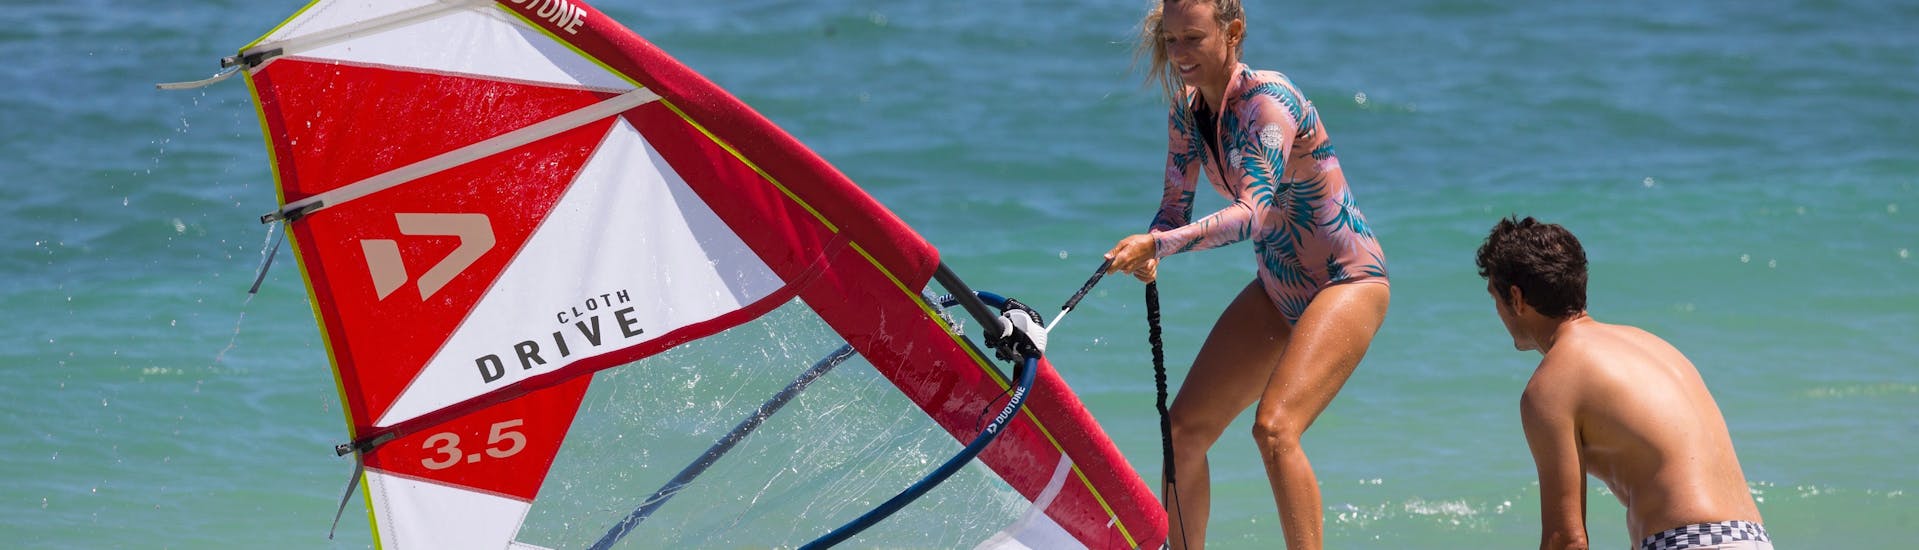 Vrouwen surfen tijdens de windsurflessen voor beginners van Water Donkey Wind & Kitesurfing Viganj.